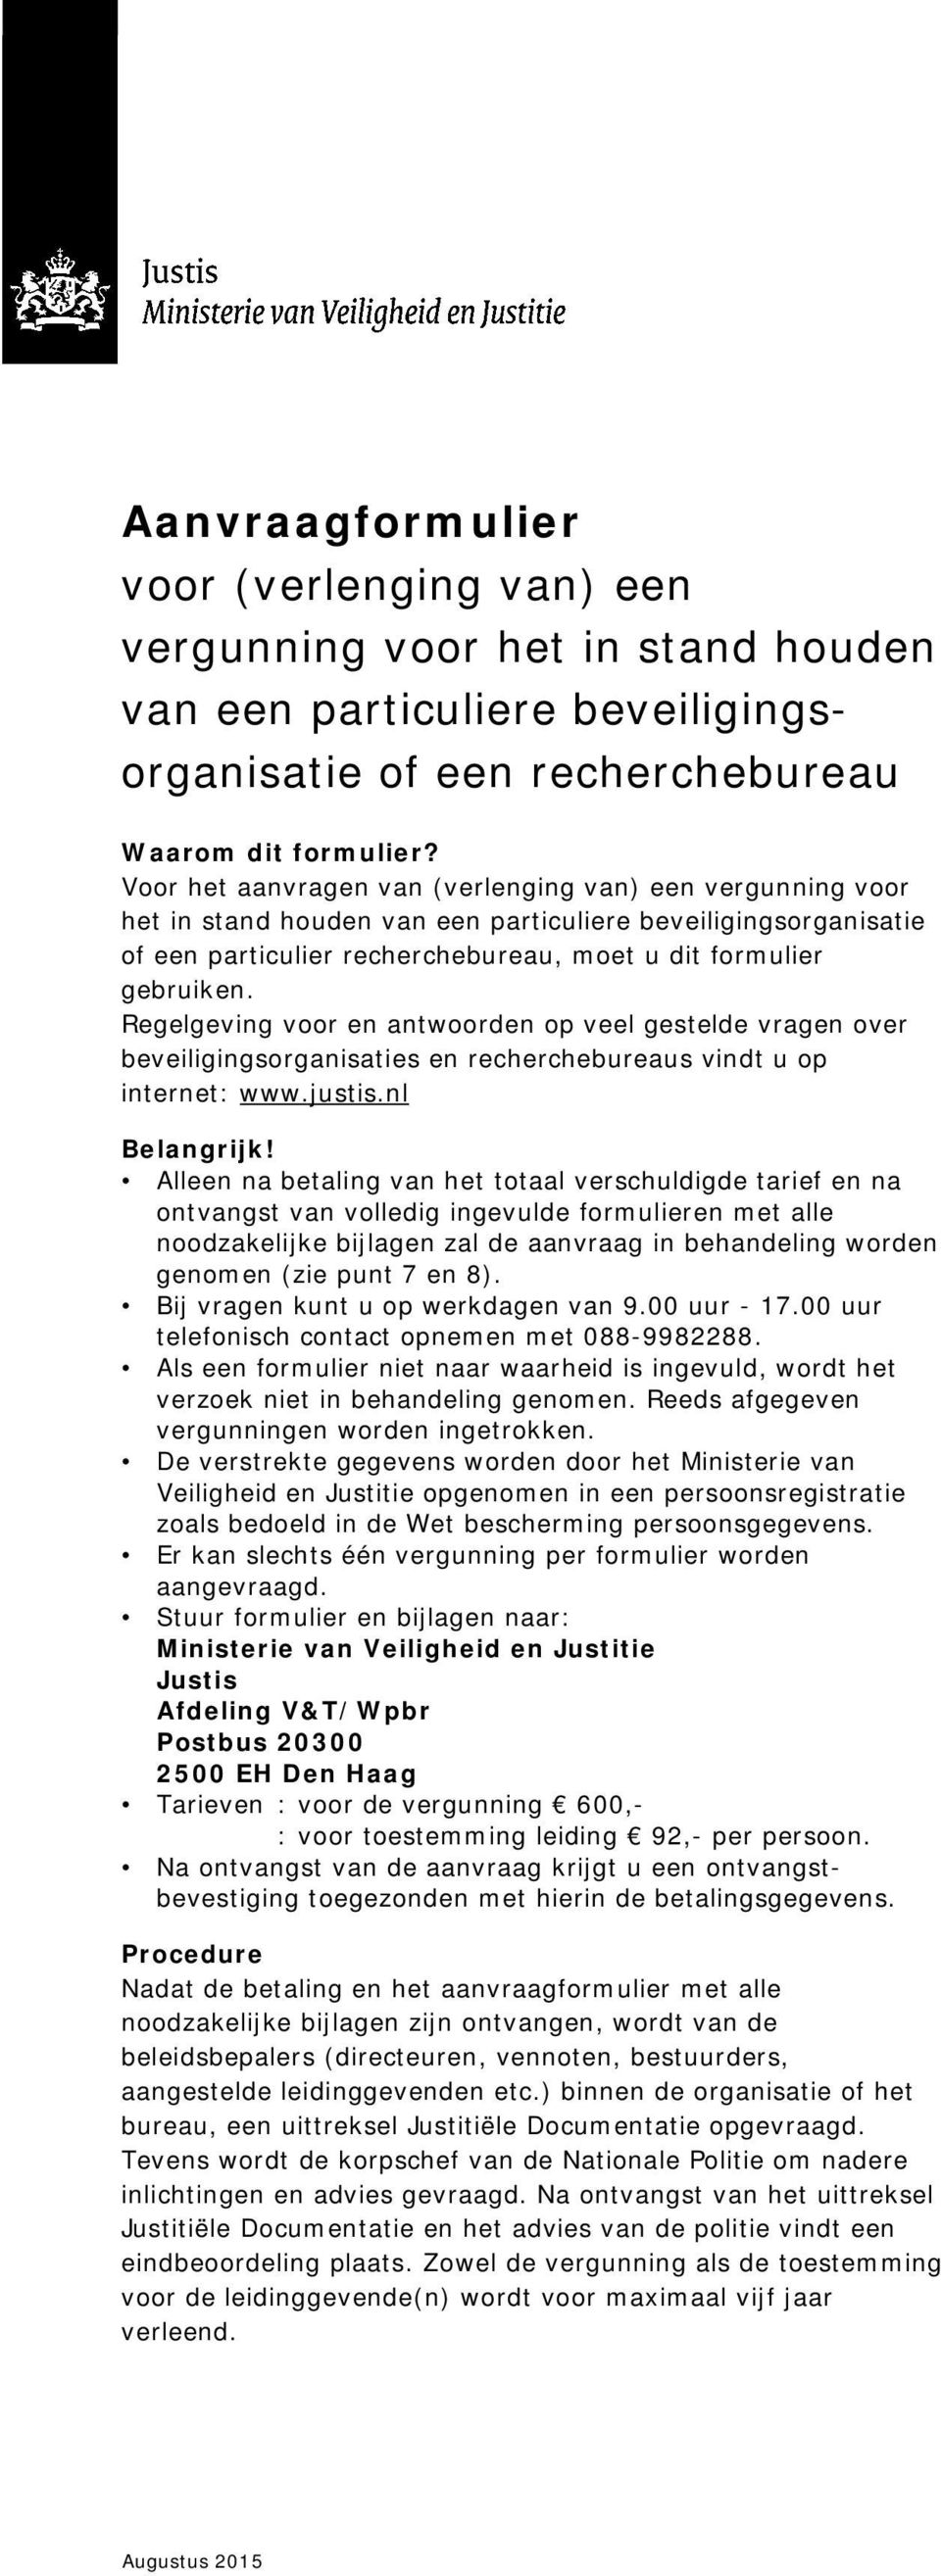 Regelgeving voor en antwoorden op veel gestelde vragen over beveiligingsorganisaties en recherchebureaus vindt u op internet: www.justis.nl Belangrijk!